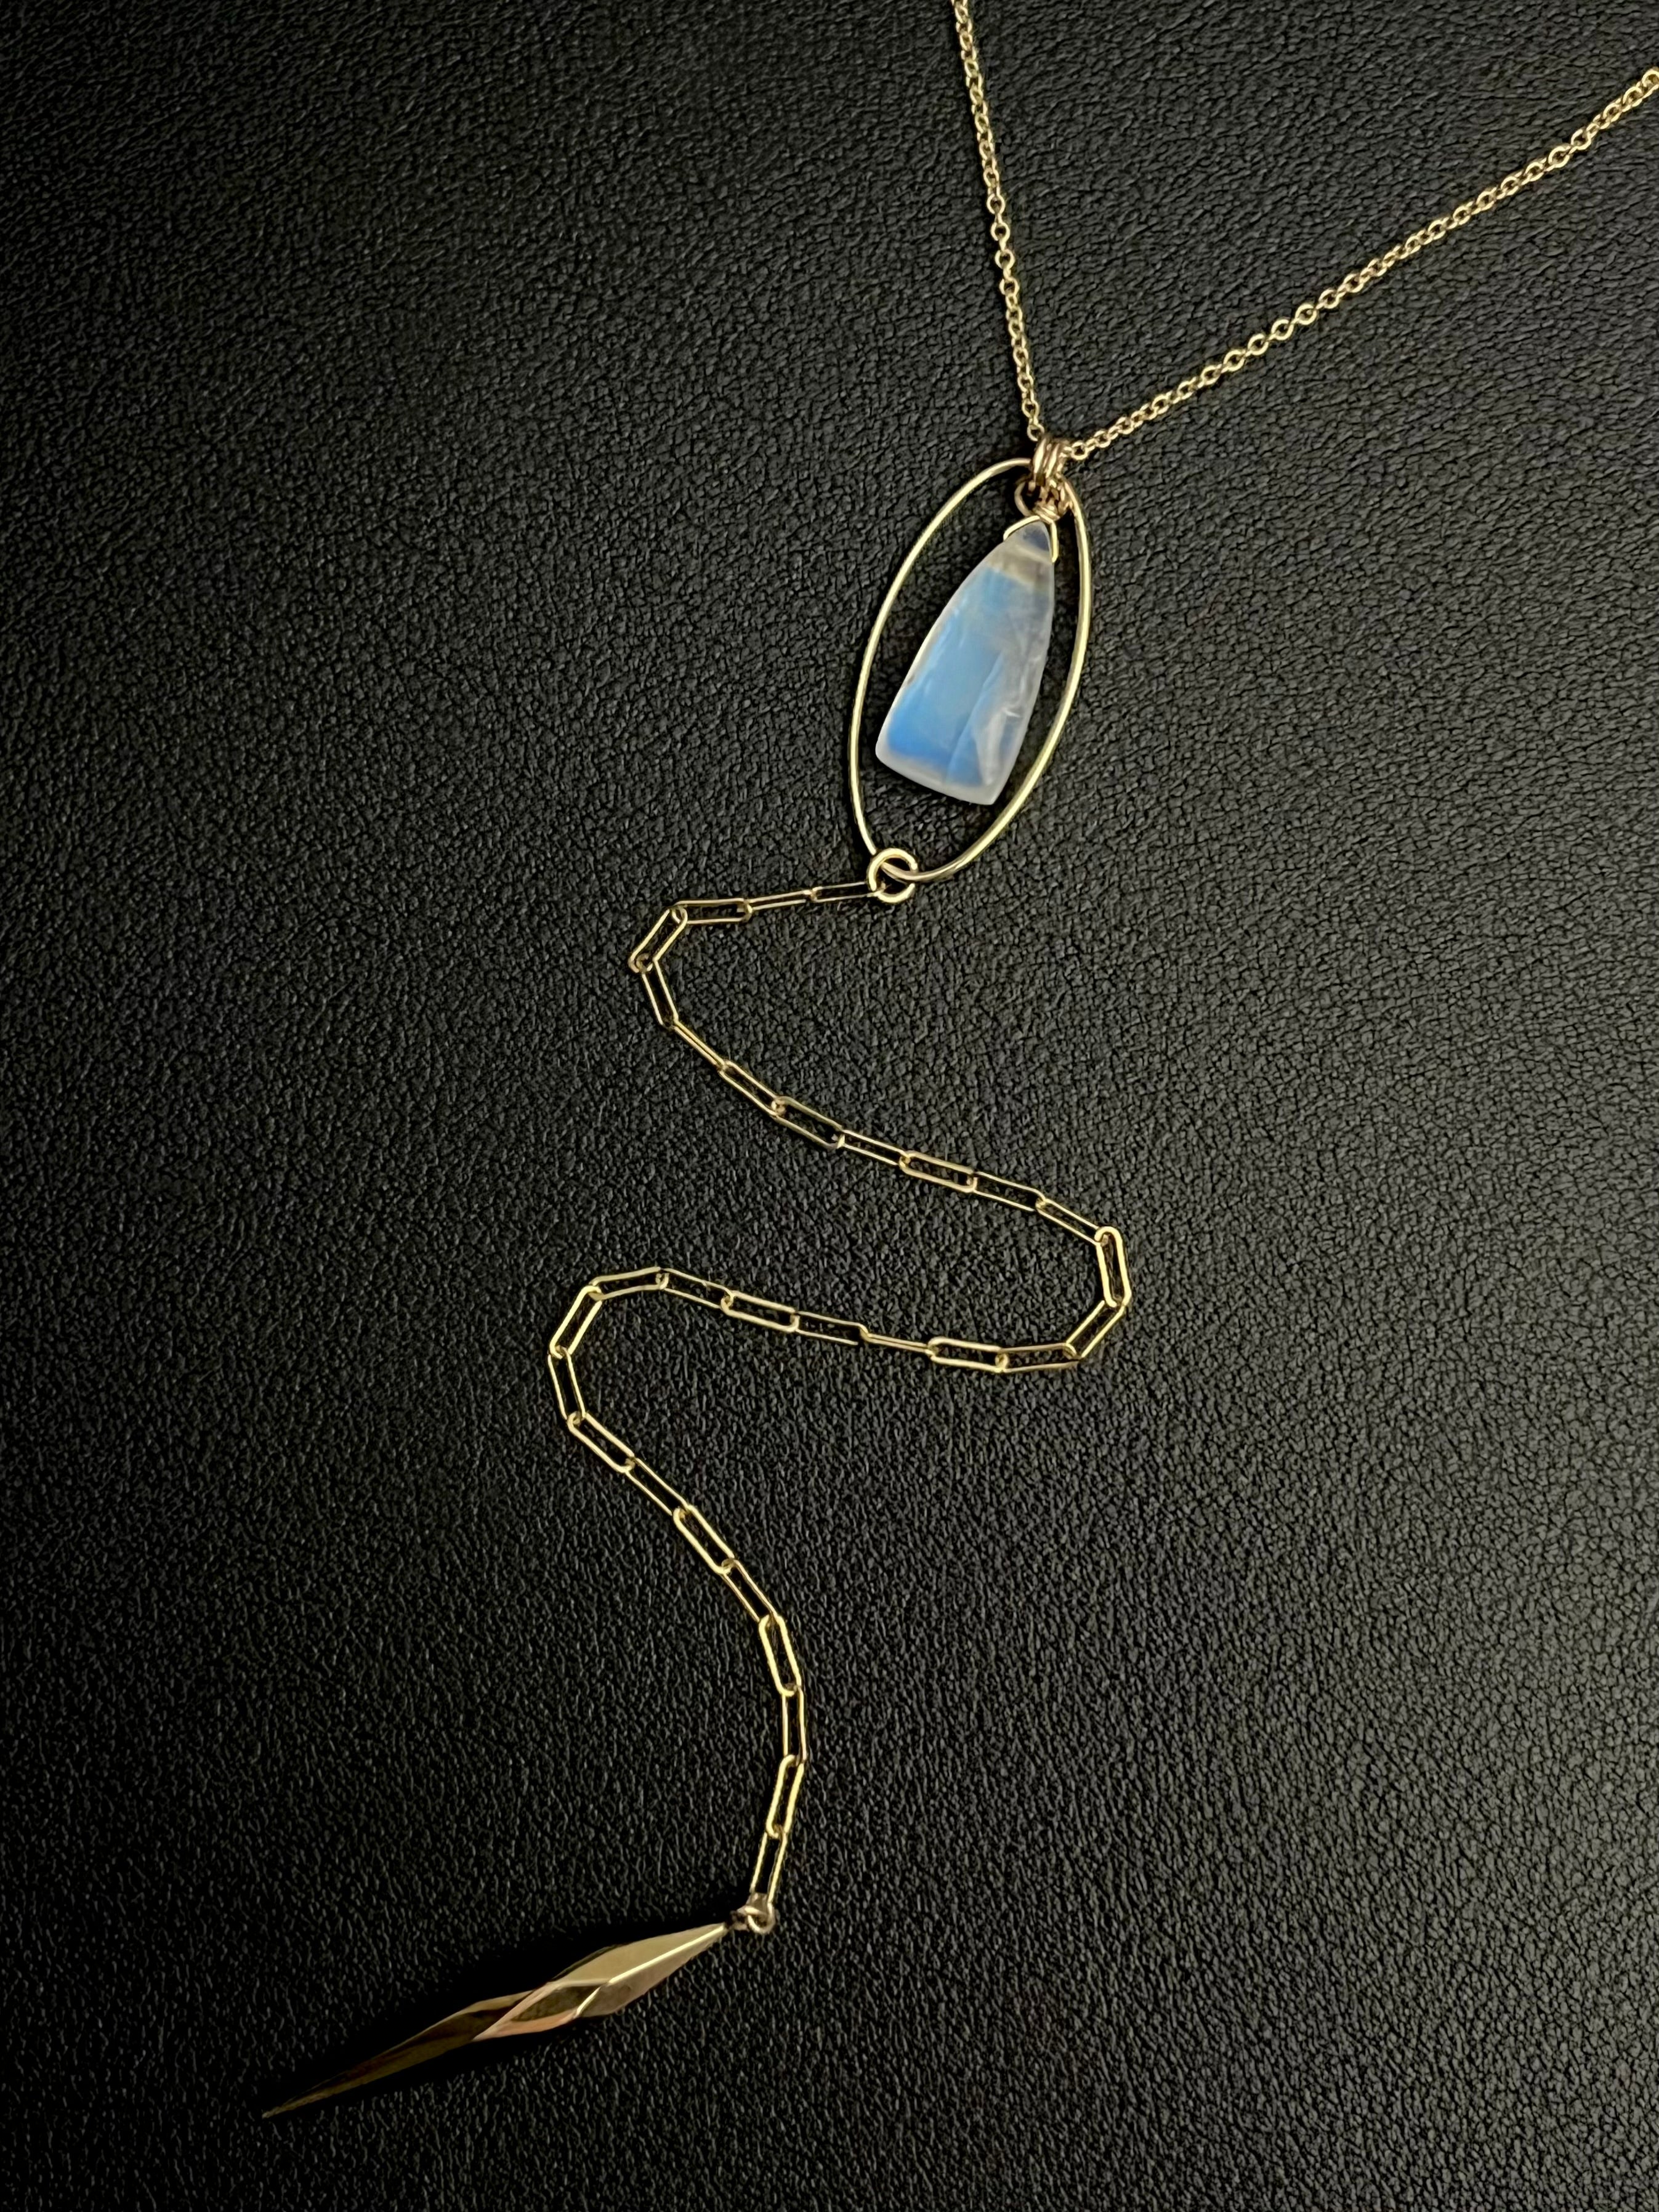 •NYX-COMET• rainbow moonstone + gold Y-necklace (18"-20" + 8" drop)